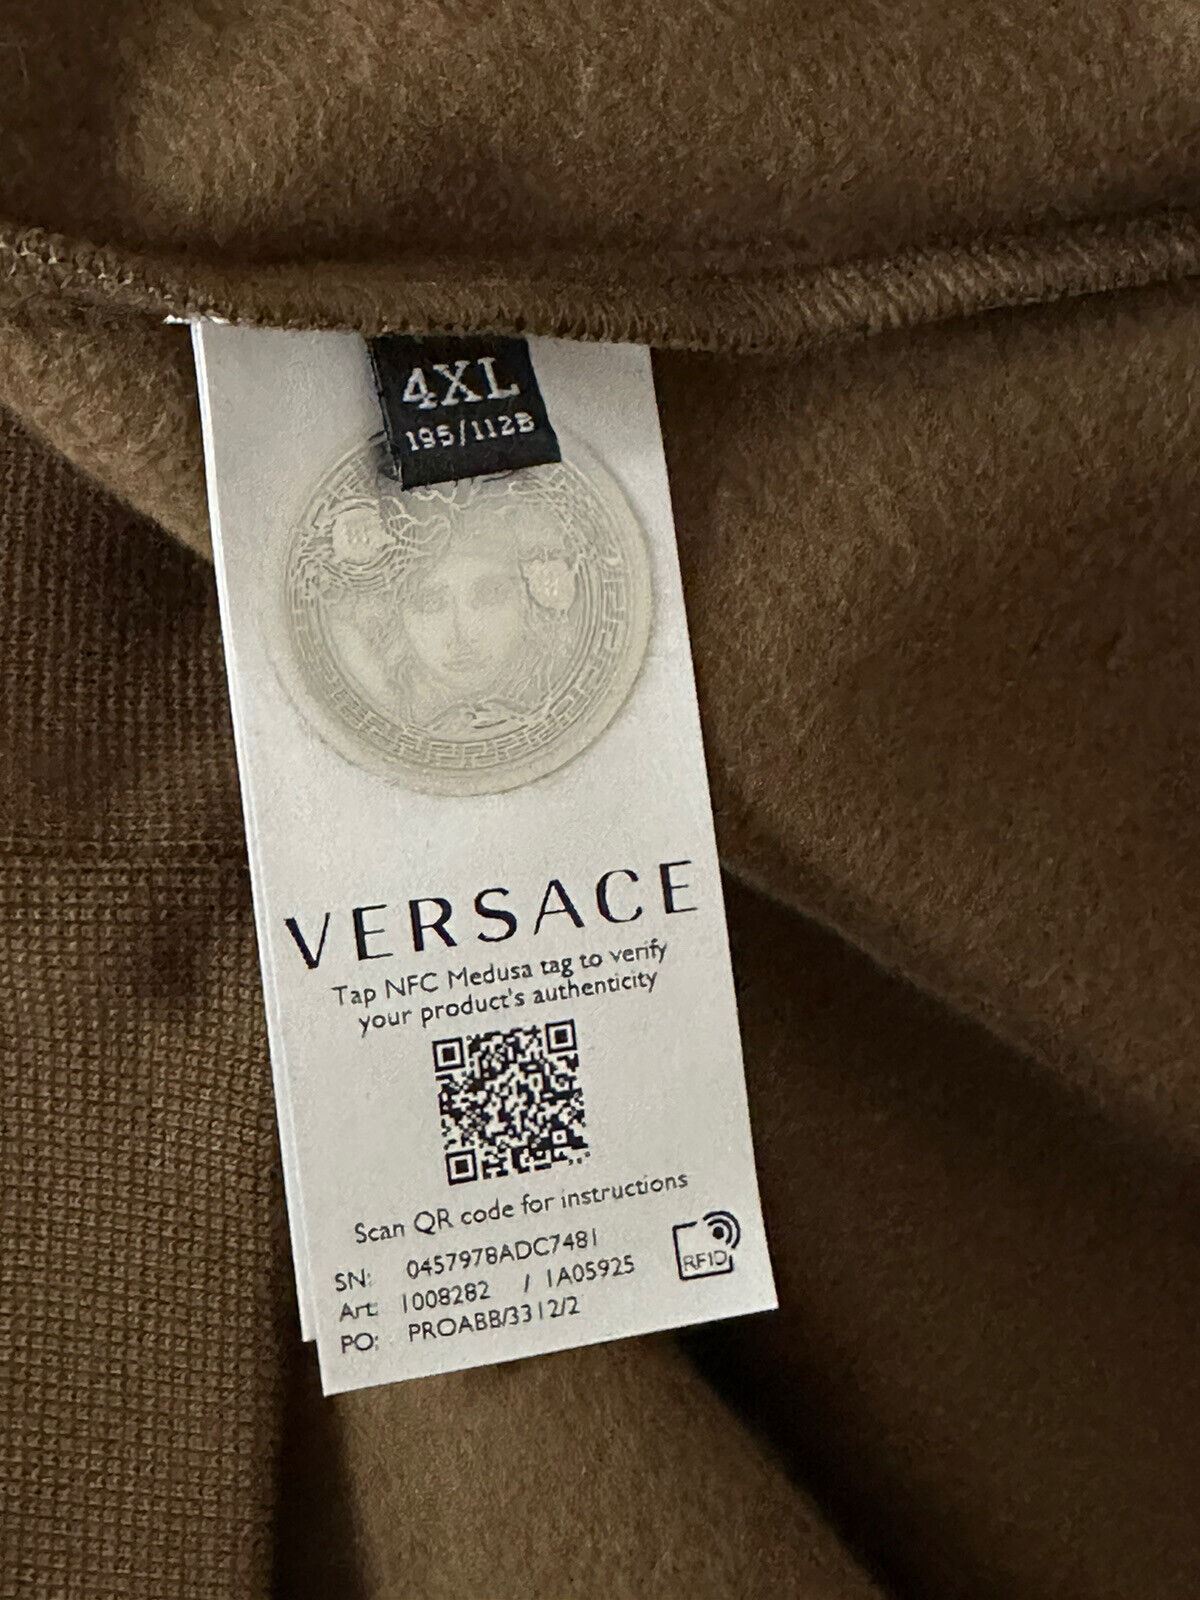 NWT $850 Versace Medusa Renaissance Khaki Cotton Sweatshirt 4XL 1008282